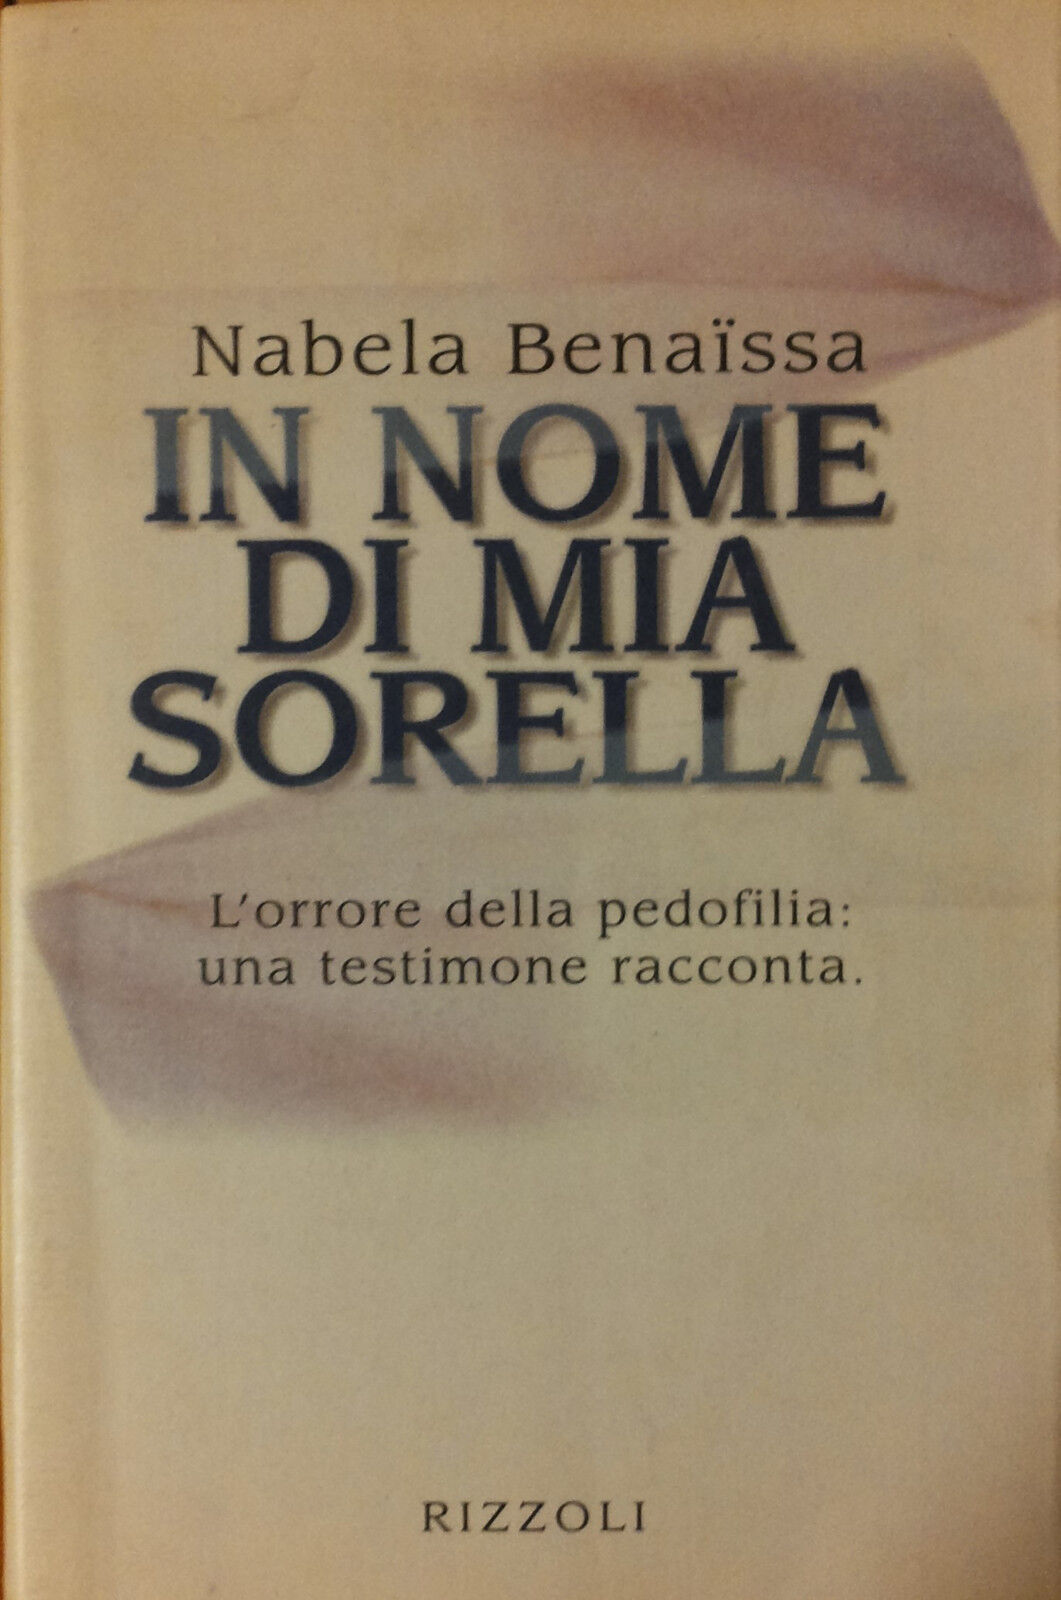 In nome di mia sorella - Nabela - Rizzoli,1997 - R